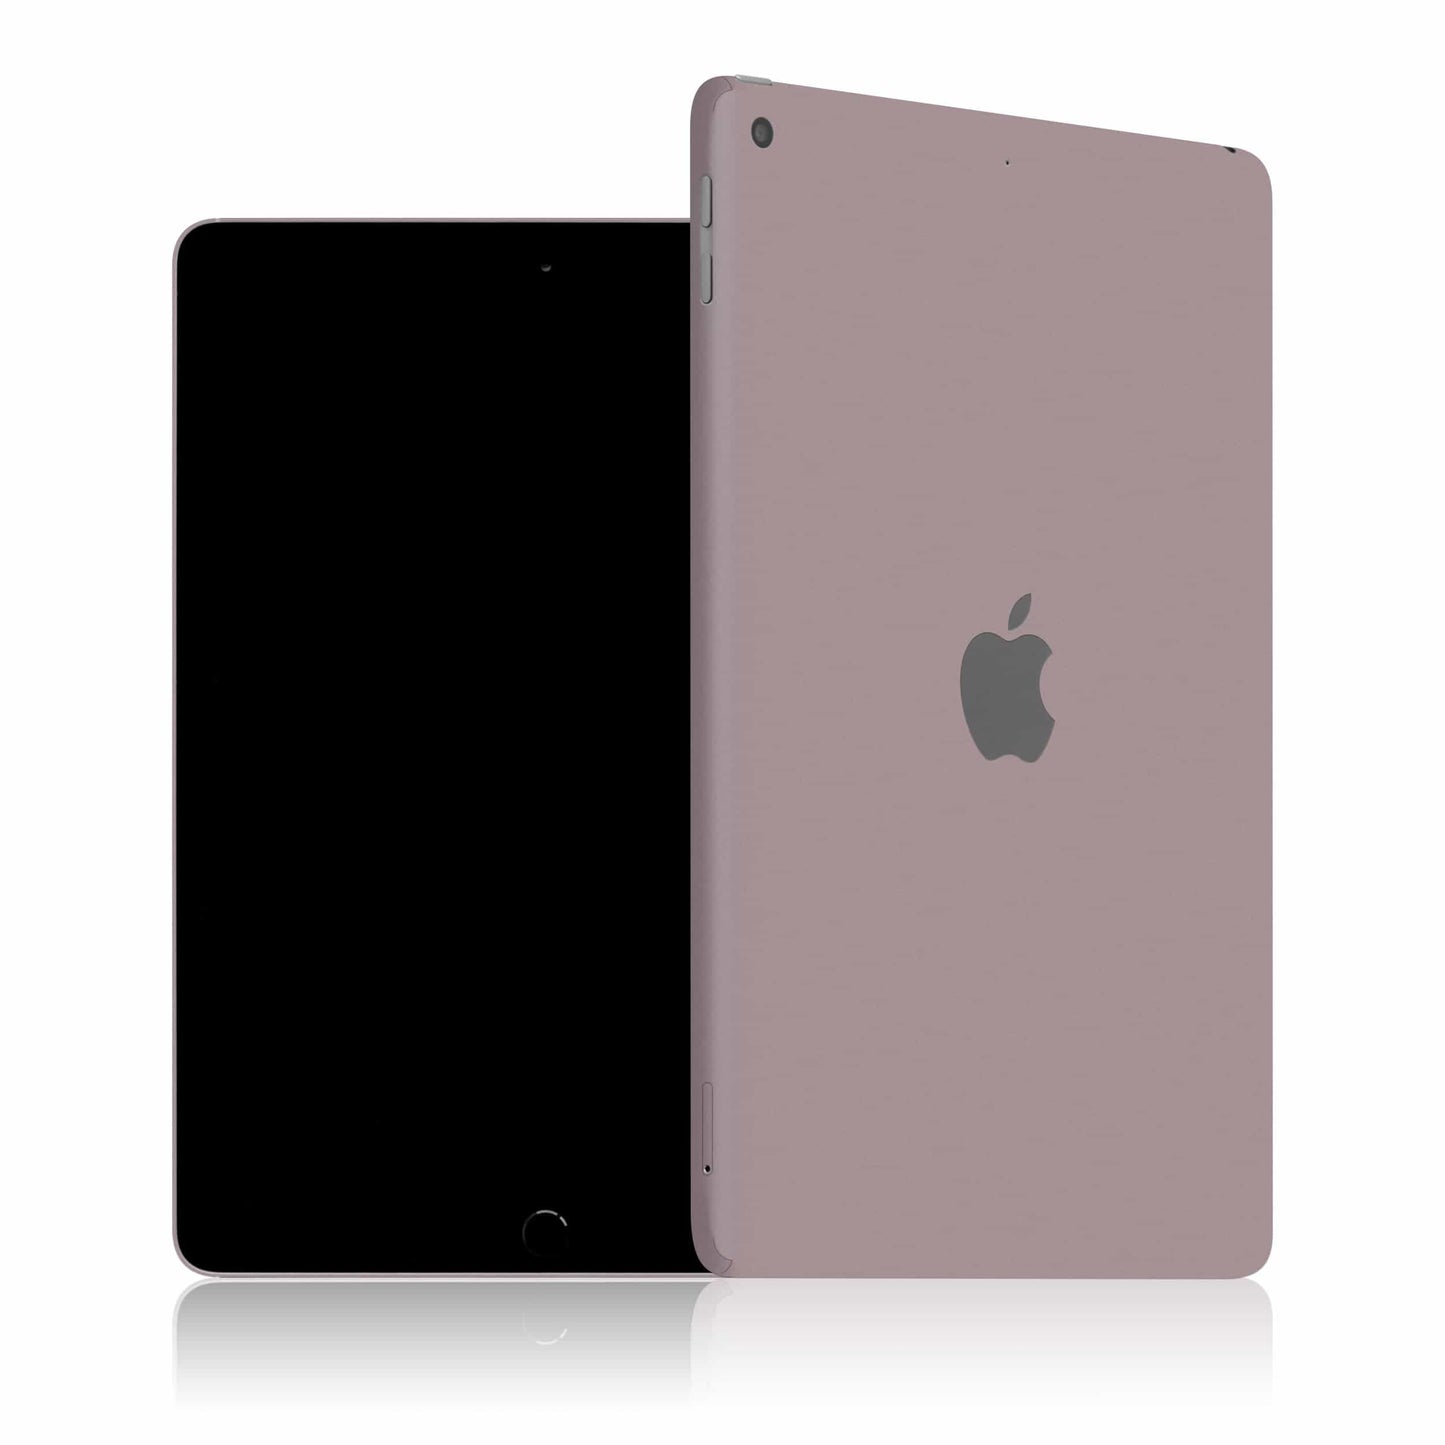 iPad 6 (2018) - Color Edition